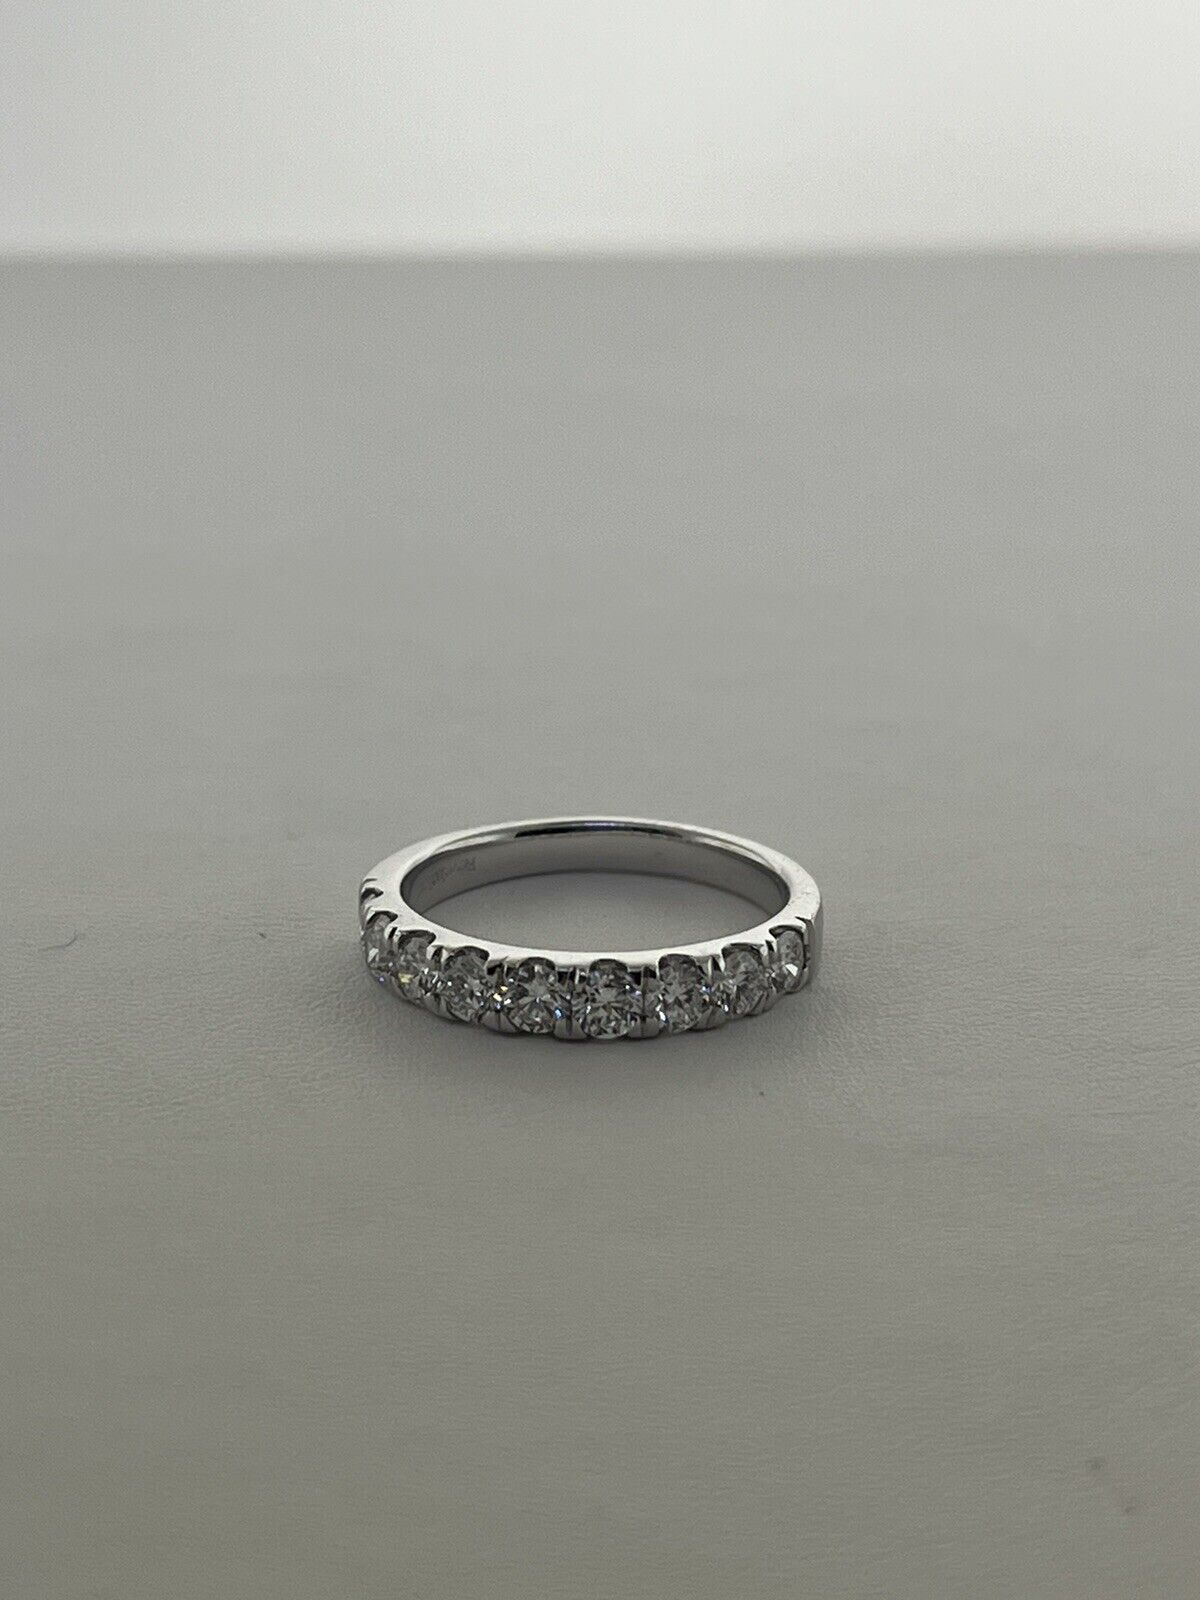 14k White Gold Ring 1.00 Carat Lab Grown Diamond Eternity Wedding Ring Size 7